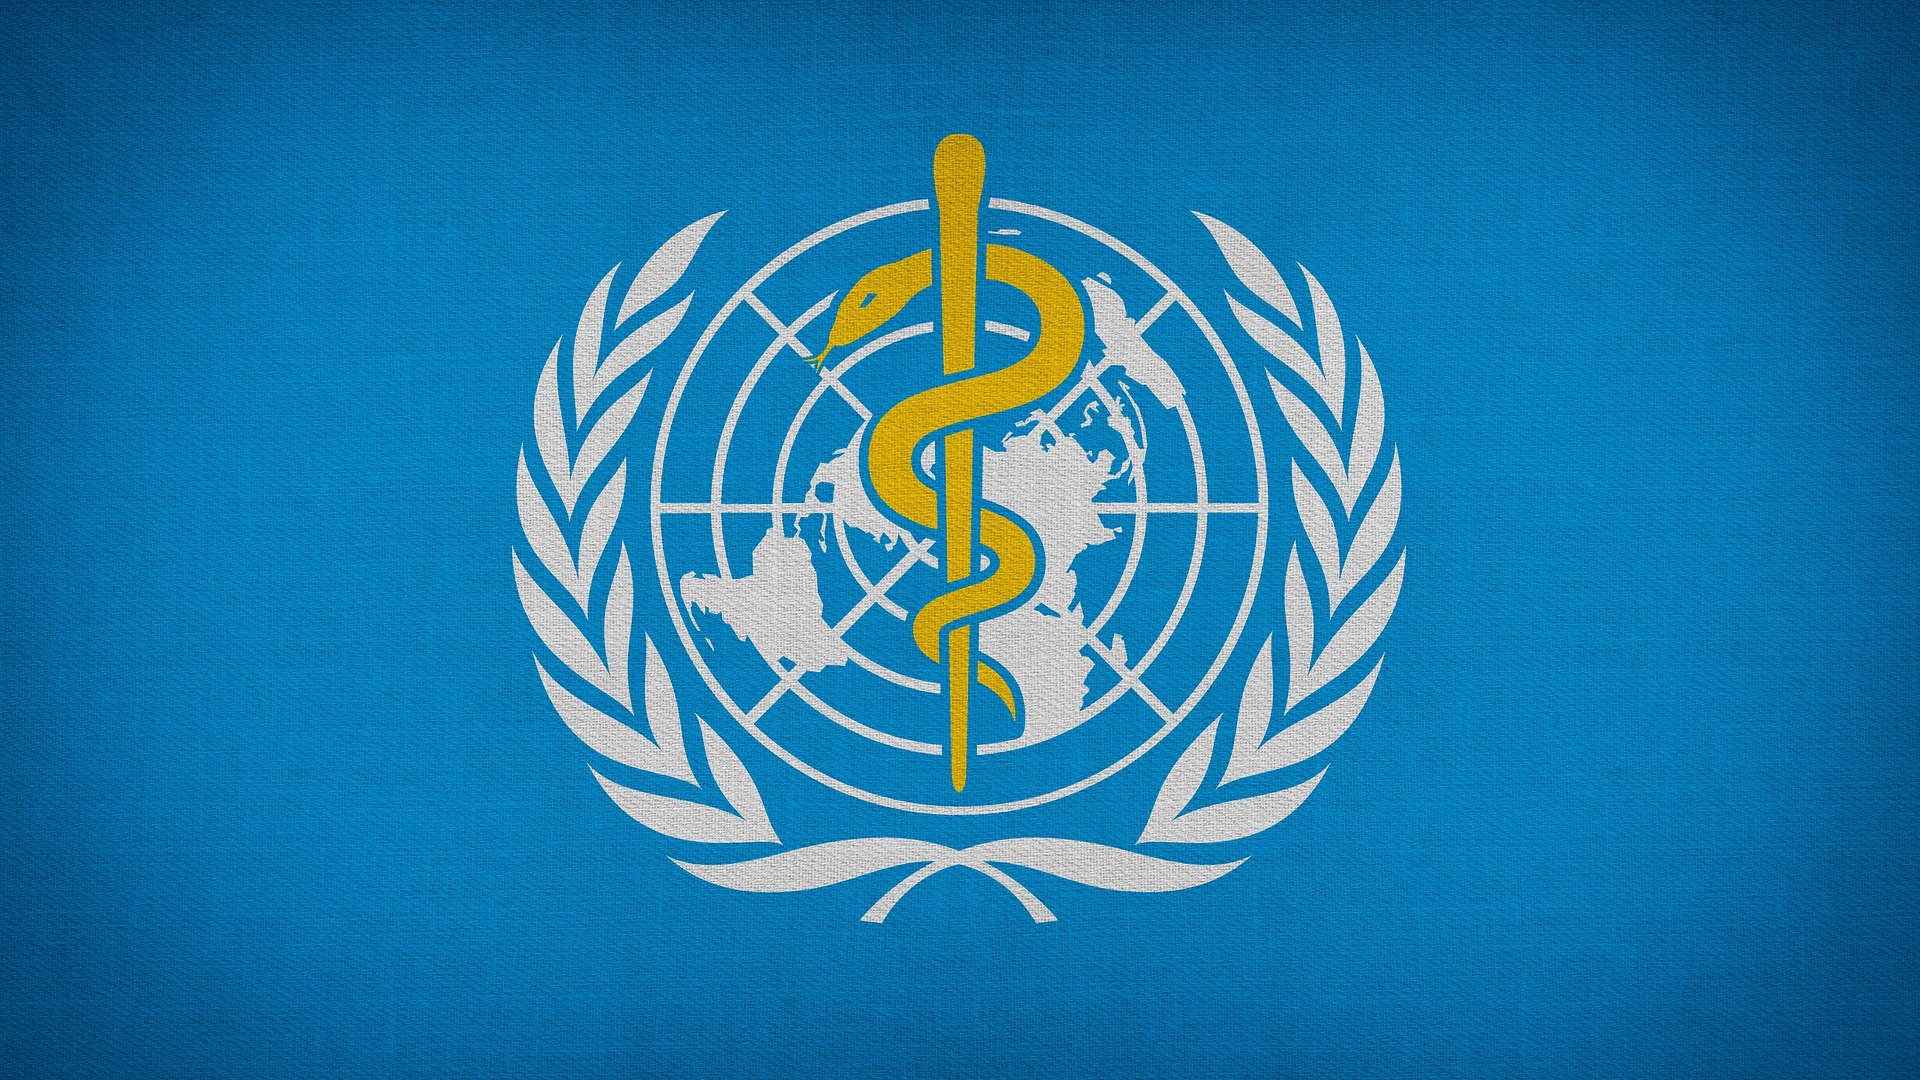 Änderung der Pandemie Definition durch die WHO 2009